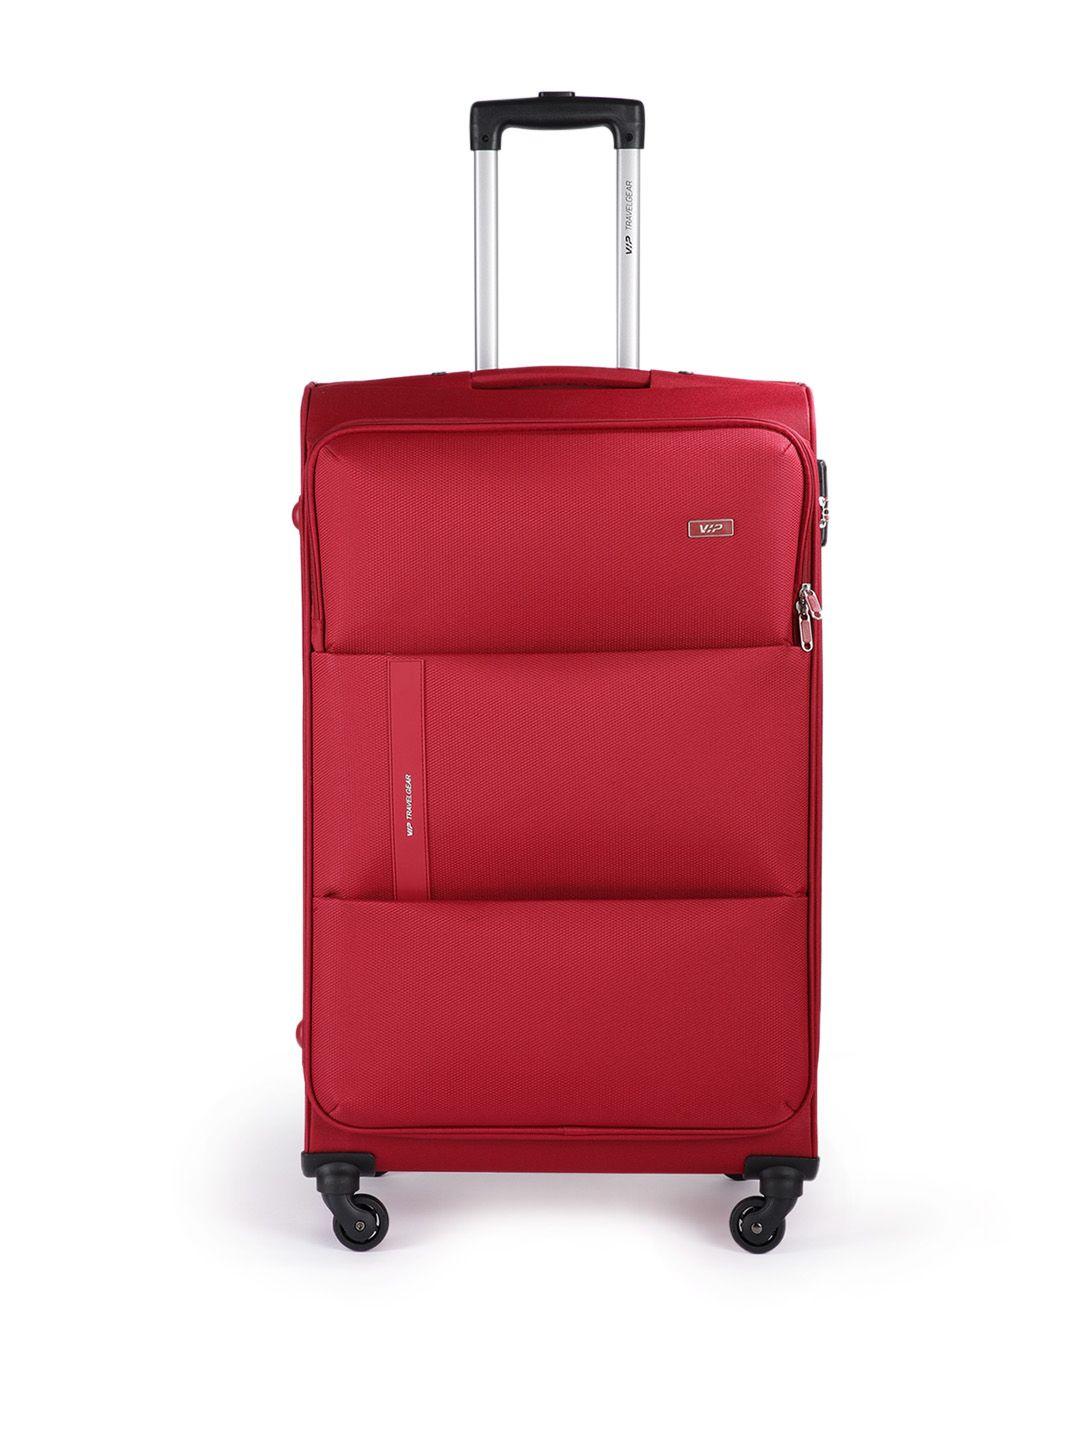 vip-red-cabin-widget-str-trolley-suitcase